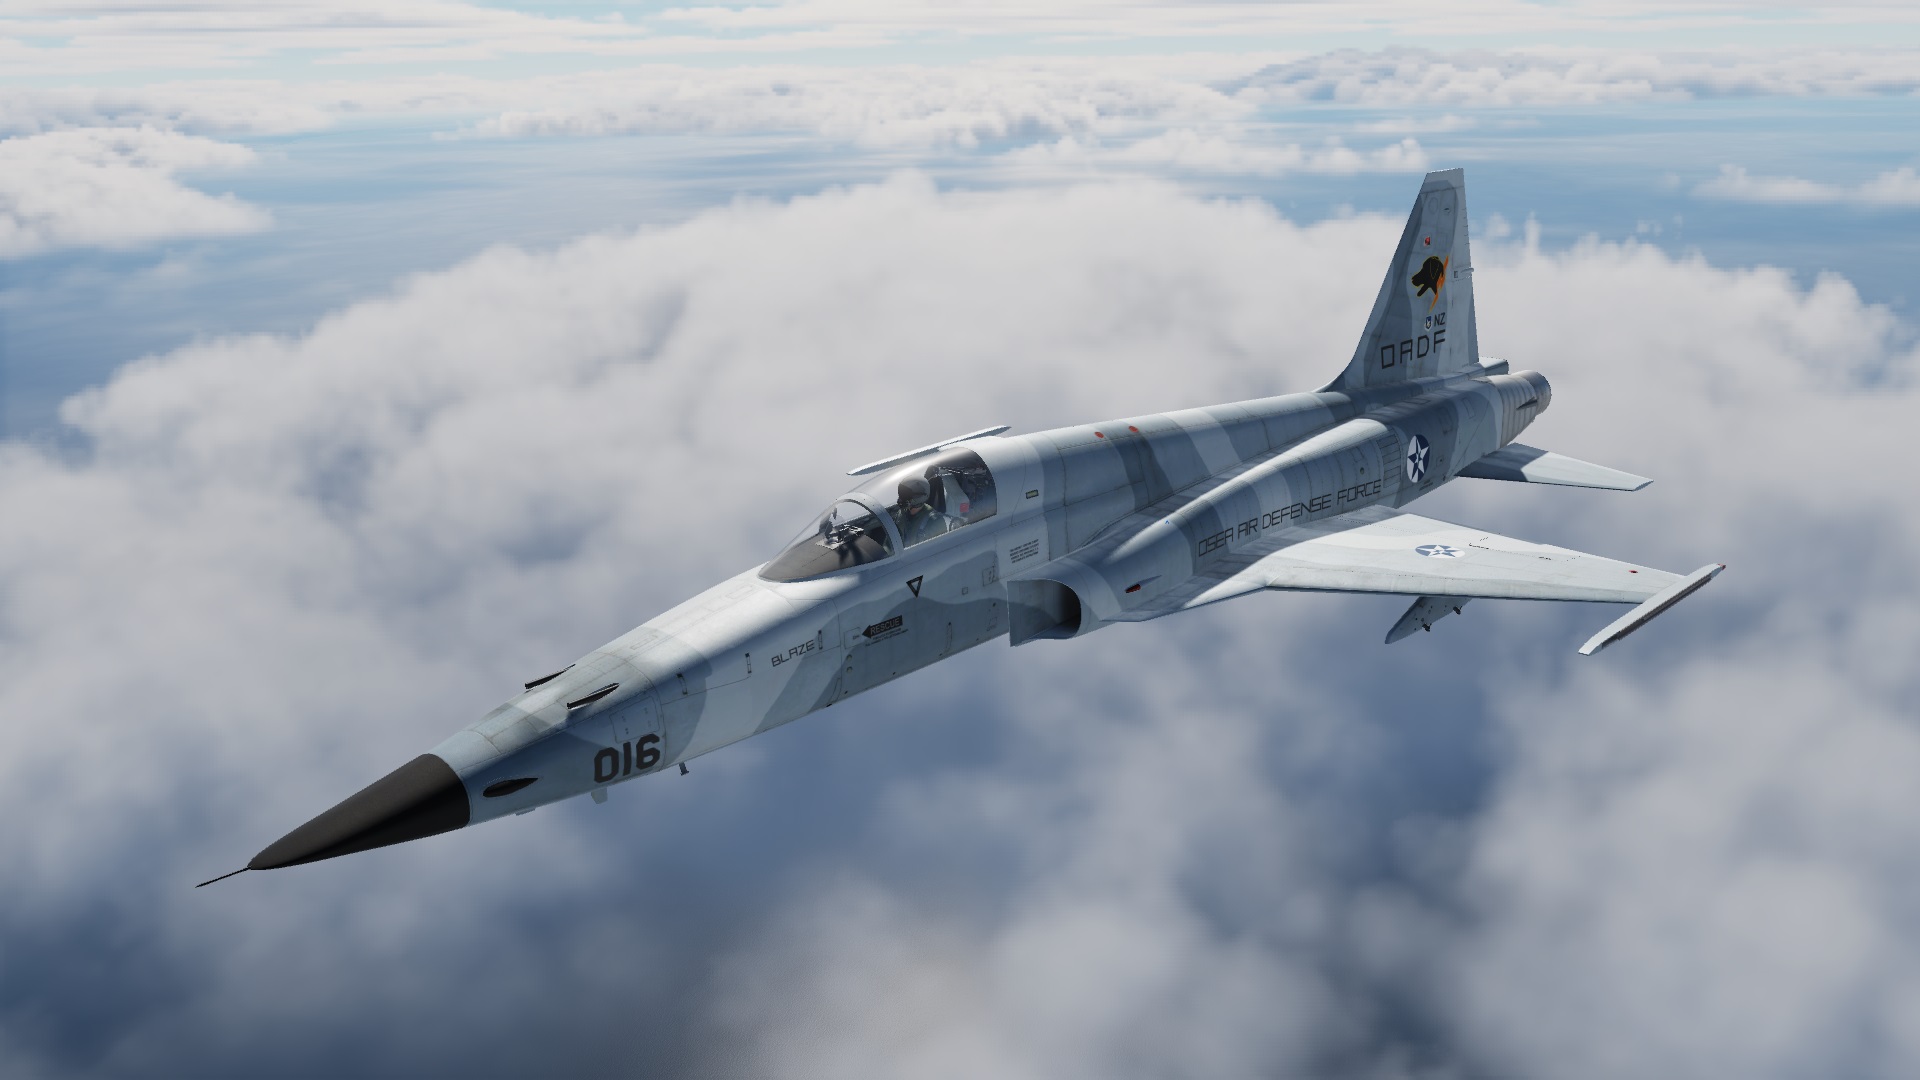 Ace Combat 5 - Mission 01 - "Shorebirds" - For Belsimtek's F-5E Tiger II - No mods version - Updated.